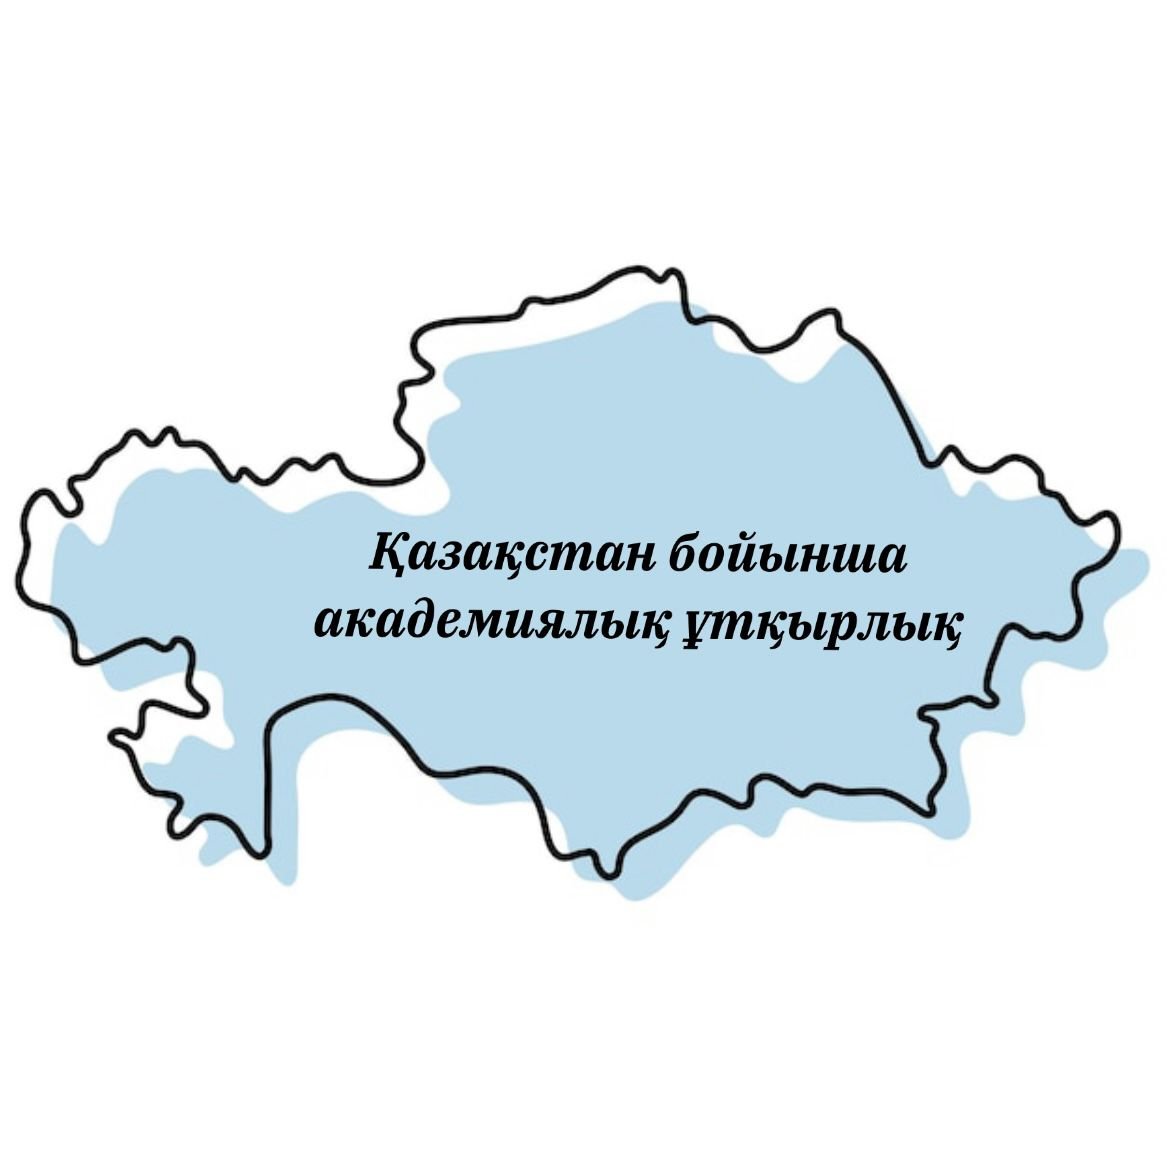 Внутренняя академическая мобильность по Казахстану